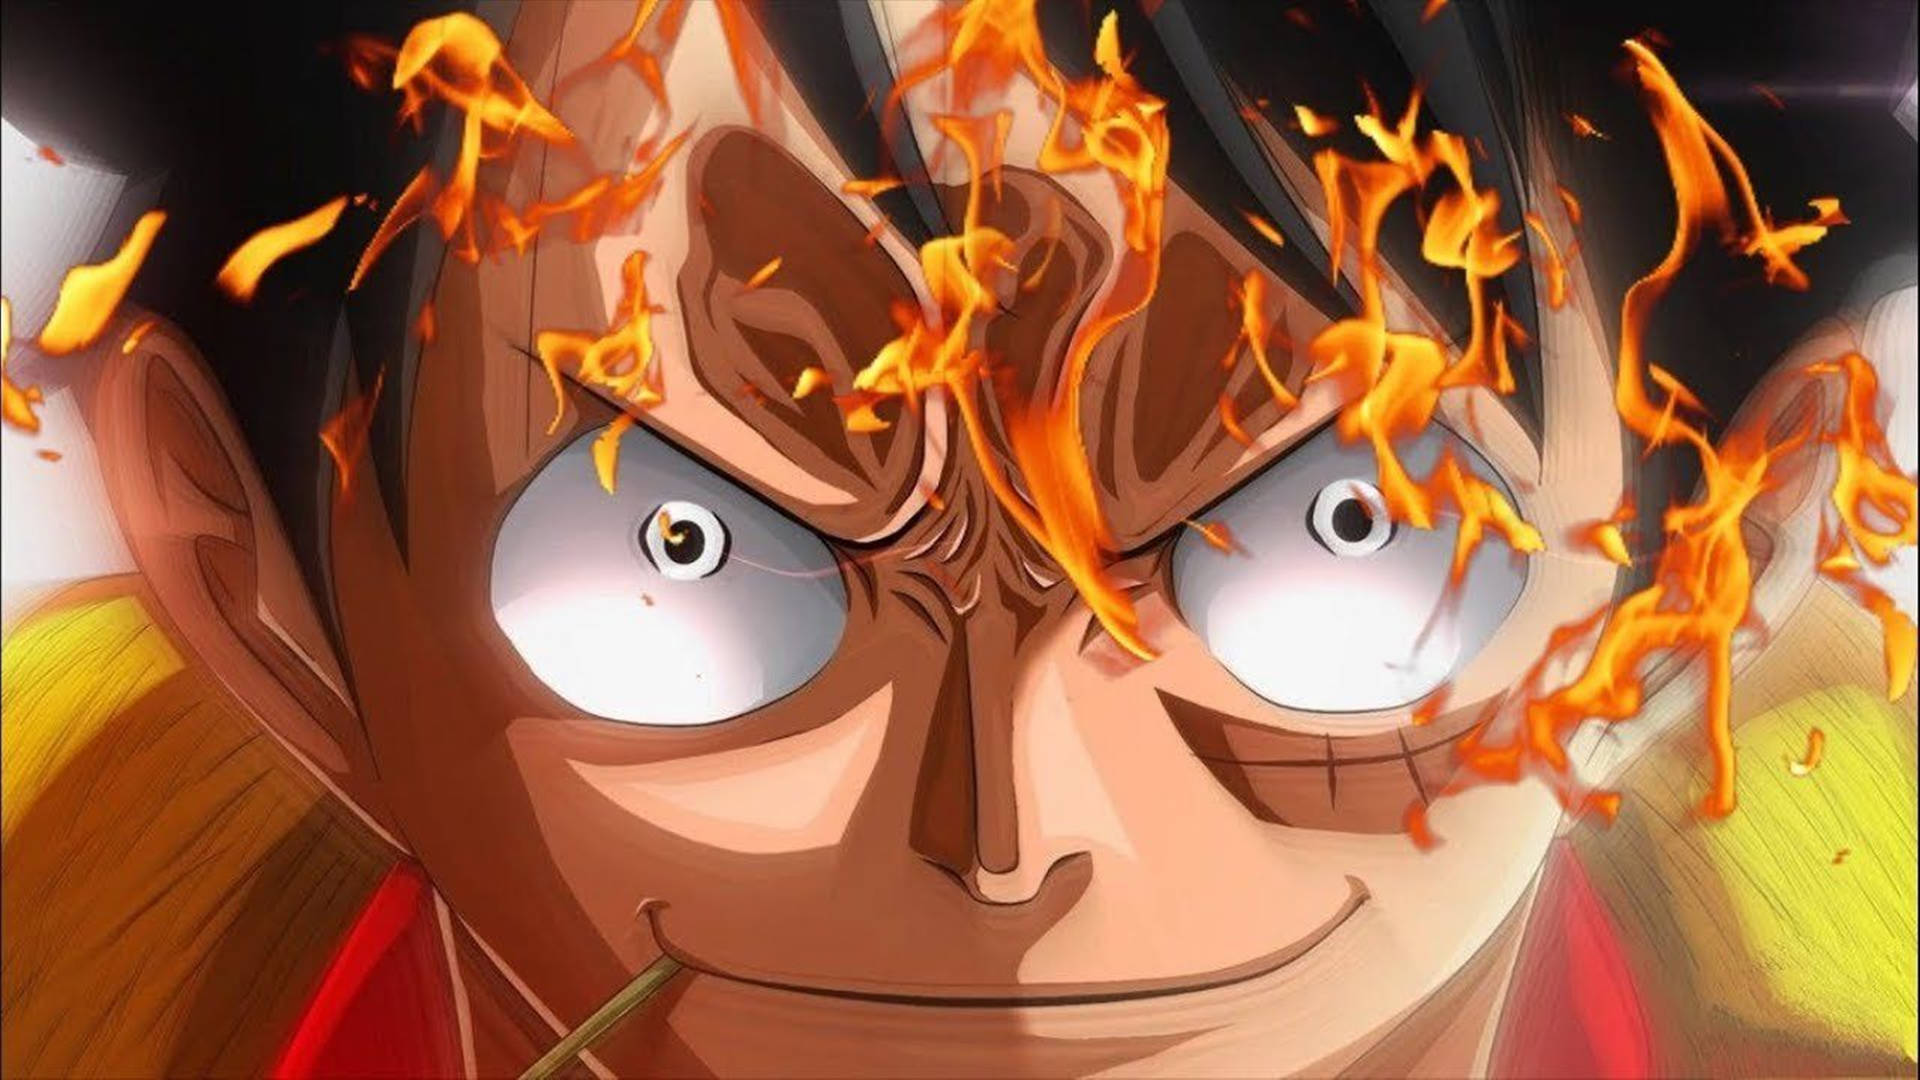 Luffymit Feuerangriff - One Piece Wano 4k Wallpaper